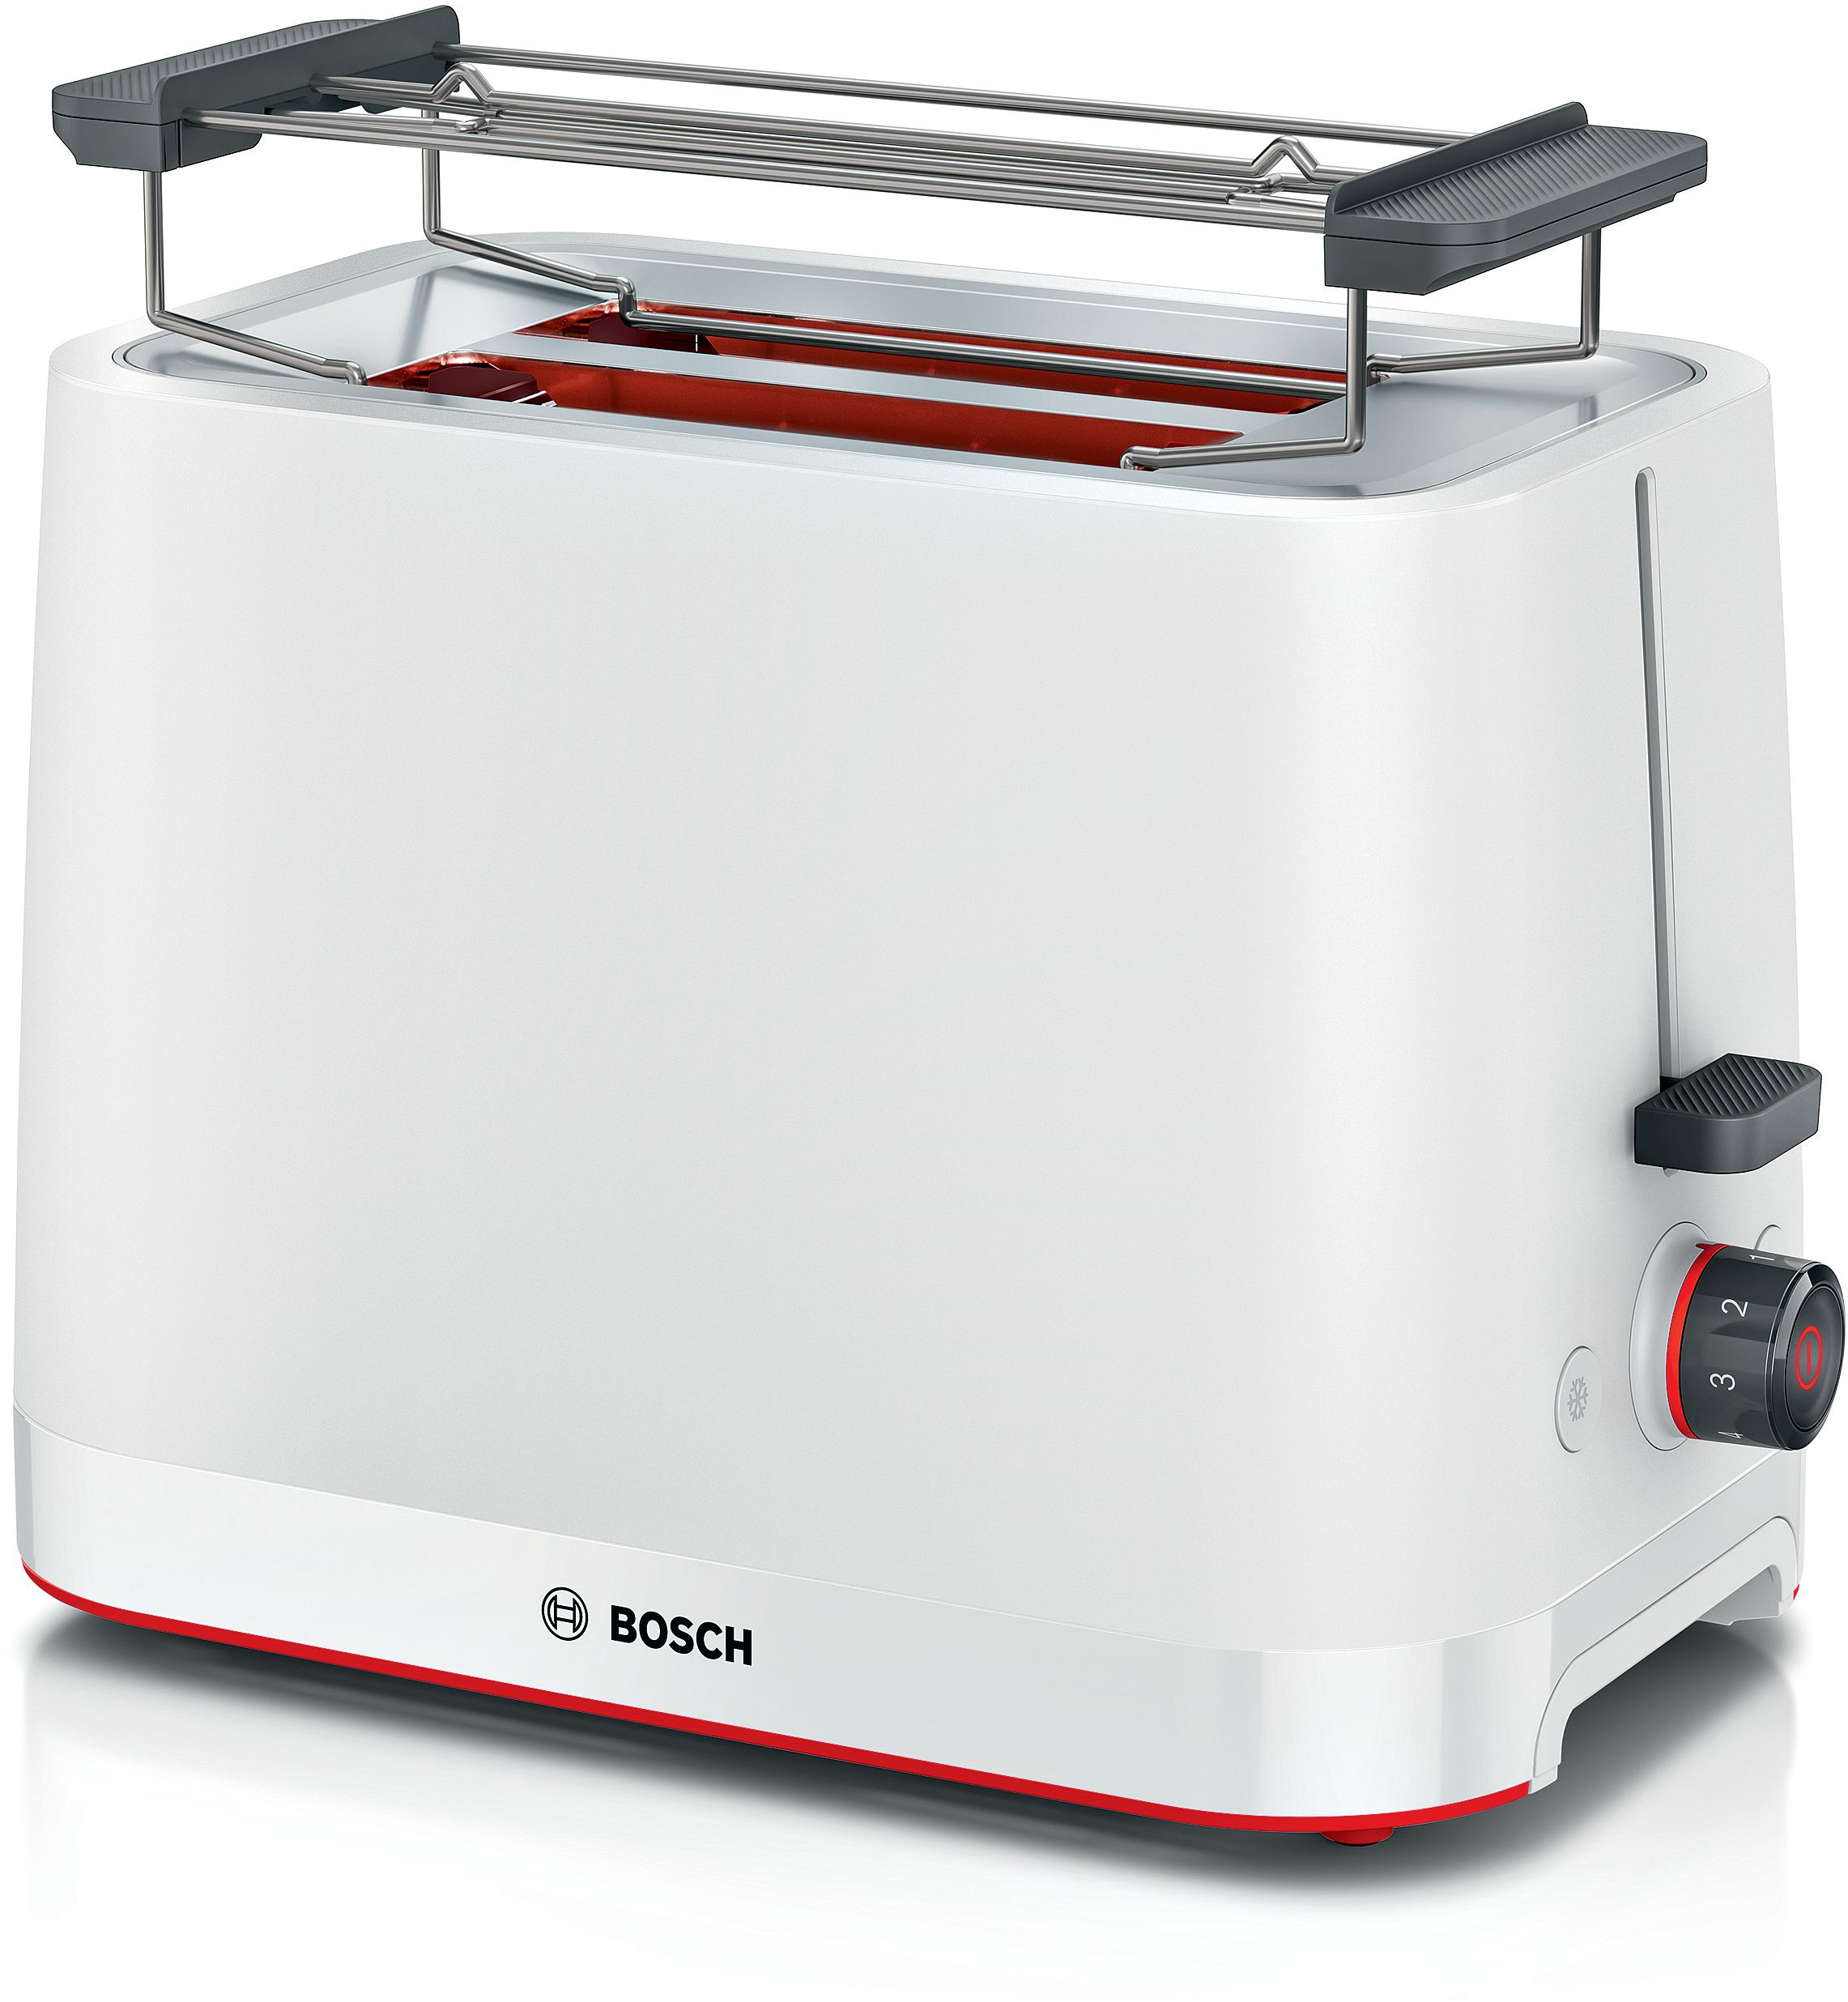 Bosch TAT3M121 MyMoment,  Kompakt Toaster, Weiß 